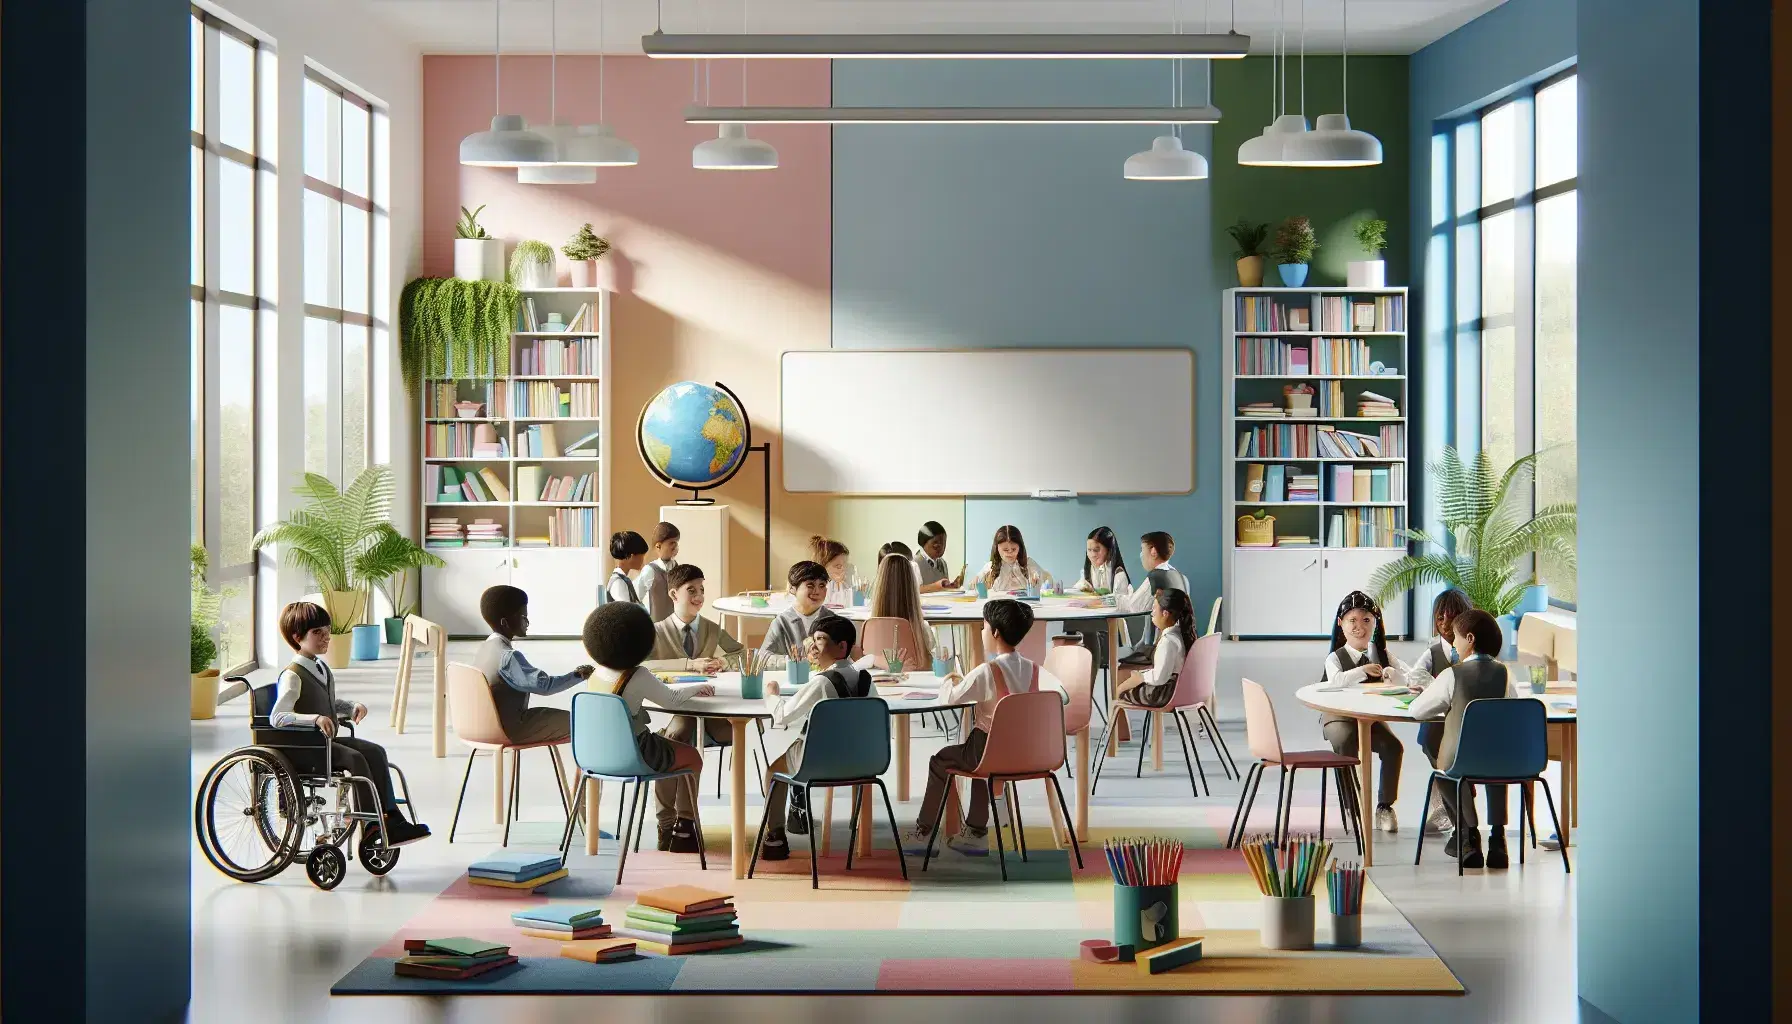 Aula escolar moderna y colorida con estudiantes diversos interactuando alrededor de una mesa redonda, algunos en sillas de ruedas, con plantas y luz natural.